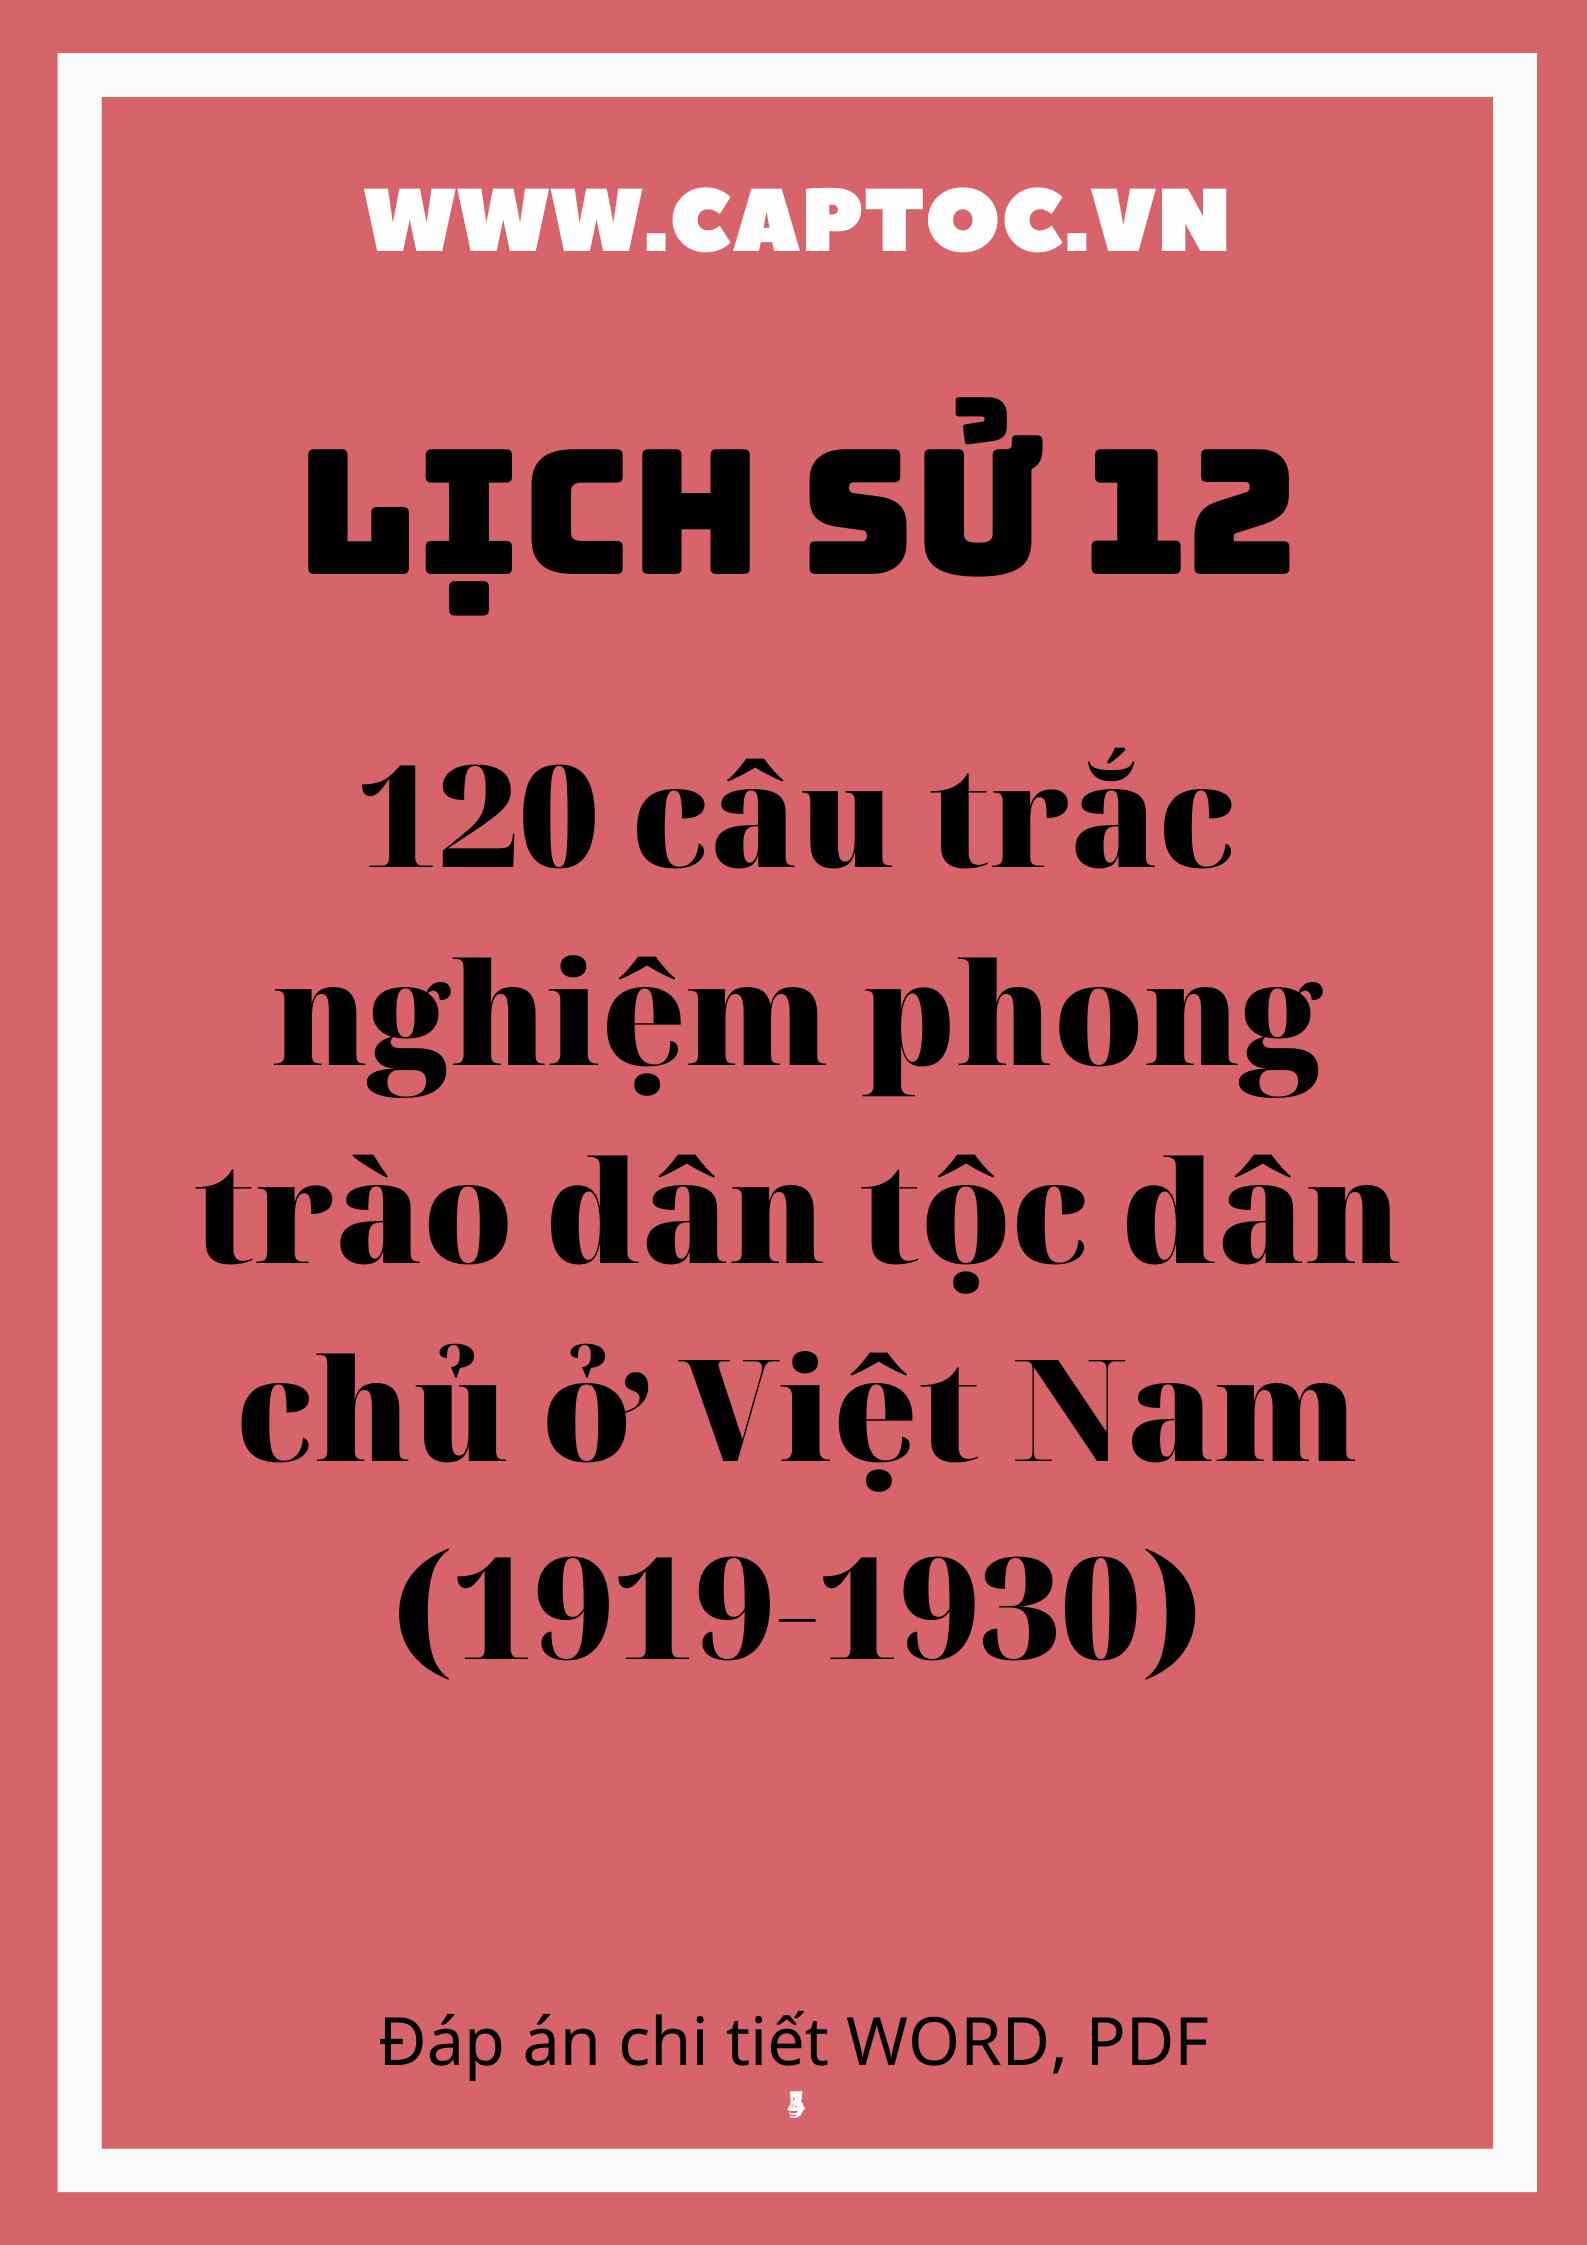 120 câu trắc nghiệm phong trào dân tộc dân chủ ở Việt Nam (1919-1930)